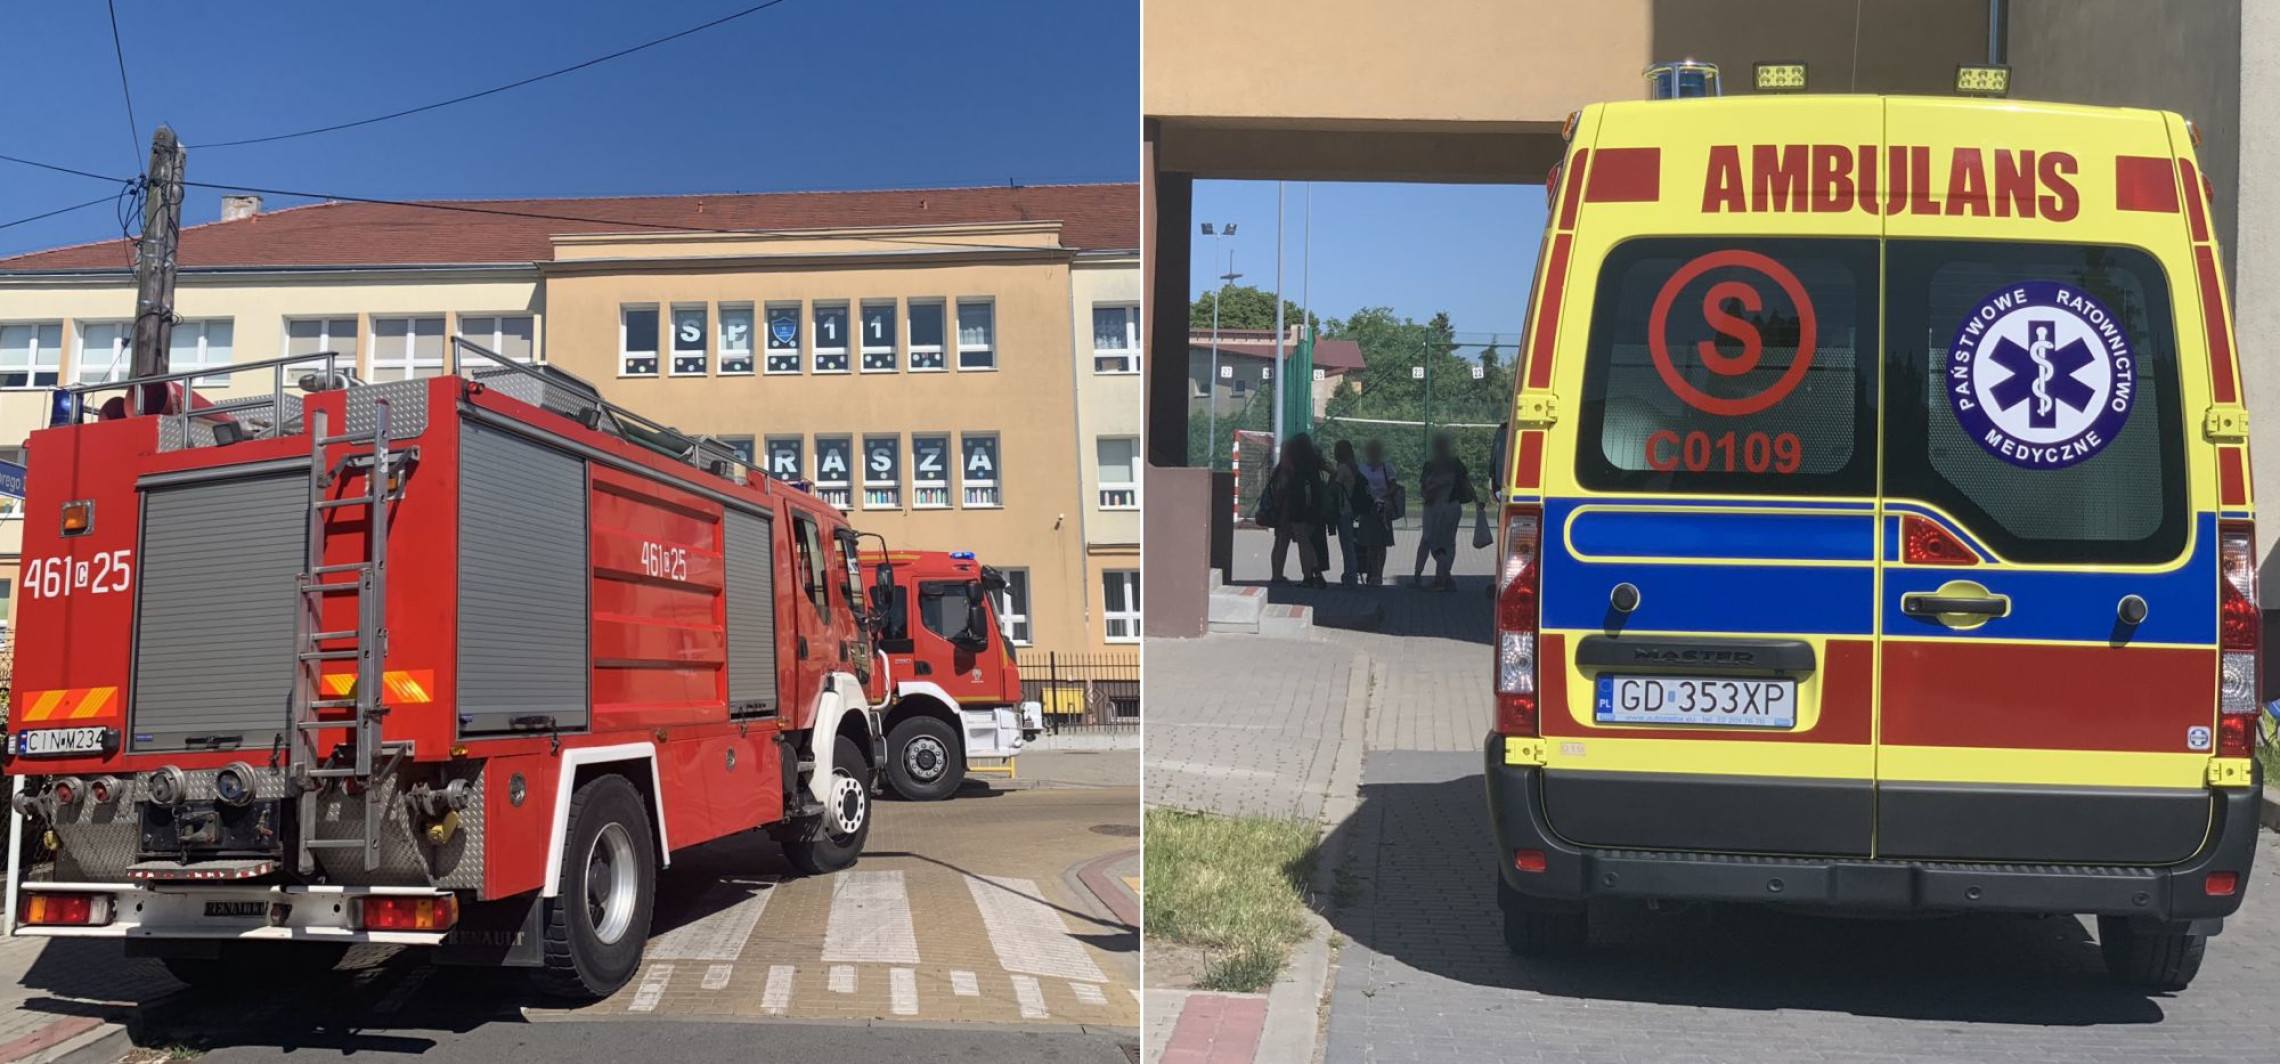 Inowrocław - Substancja rozpylona w szkole. W akcji strażacy